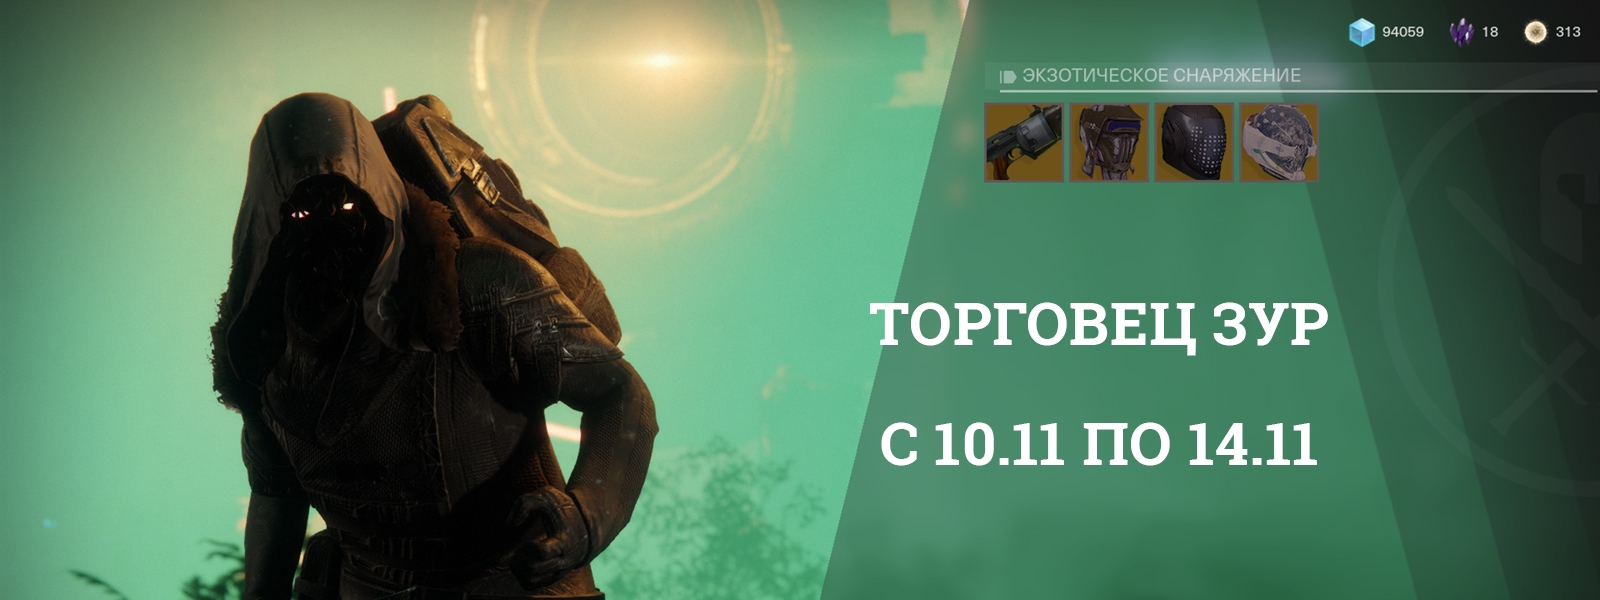 Destiny 2: Зур и его товары с 10 по 14 ноября